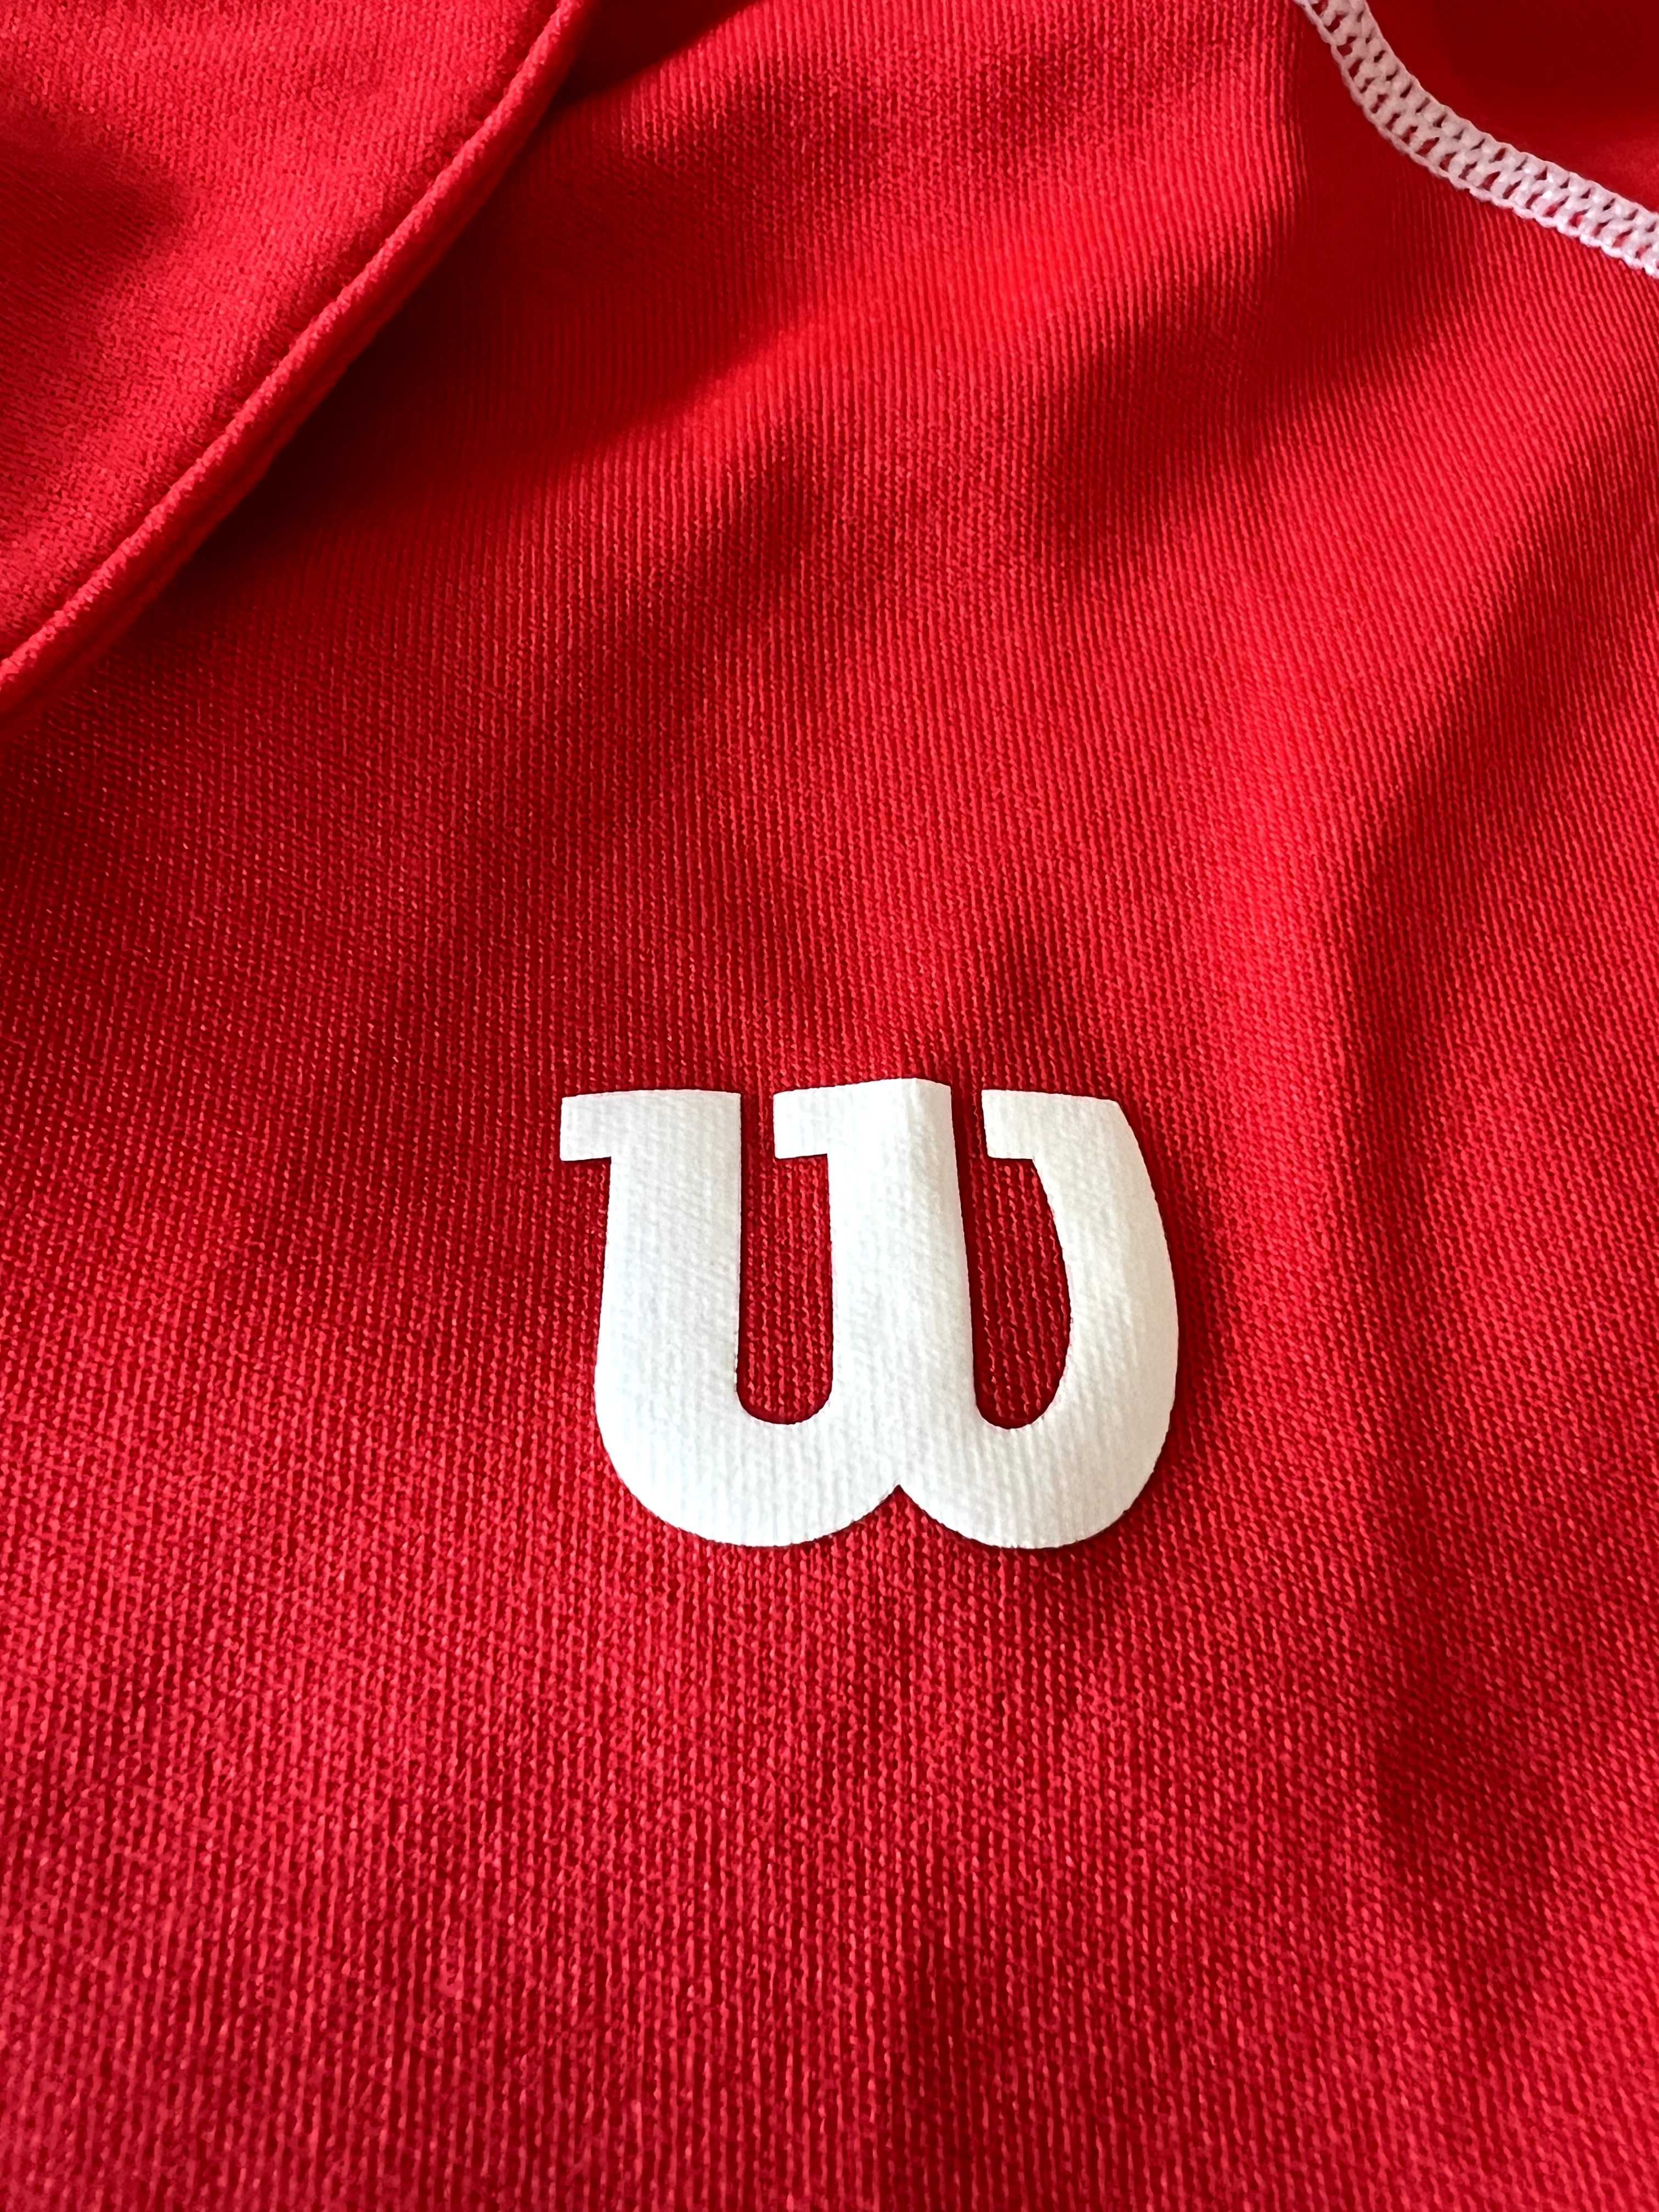 Оригинална тениска за тенис Wilson, размер М